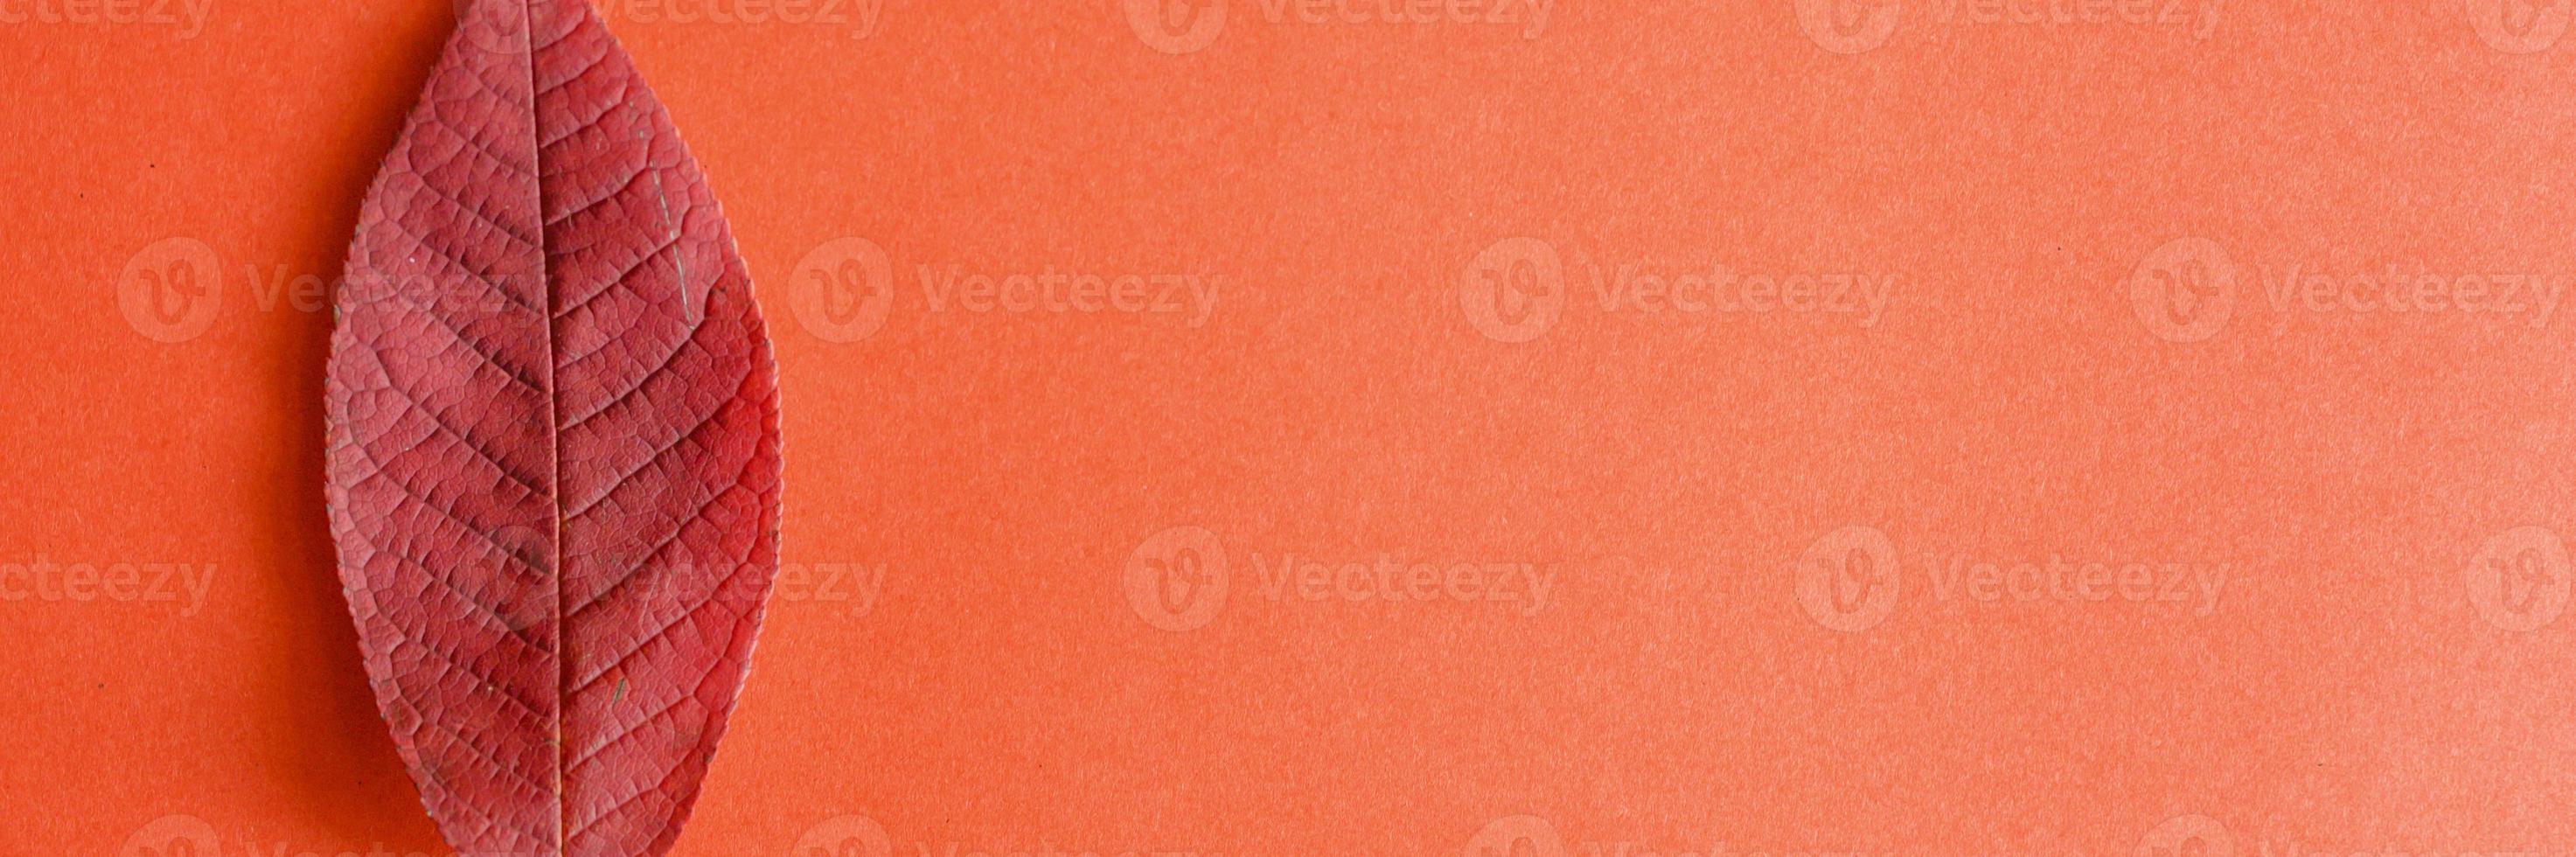 enda röda fallna höstkörsbärsblad på en röd pappersbakgrund foto